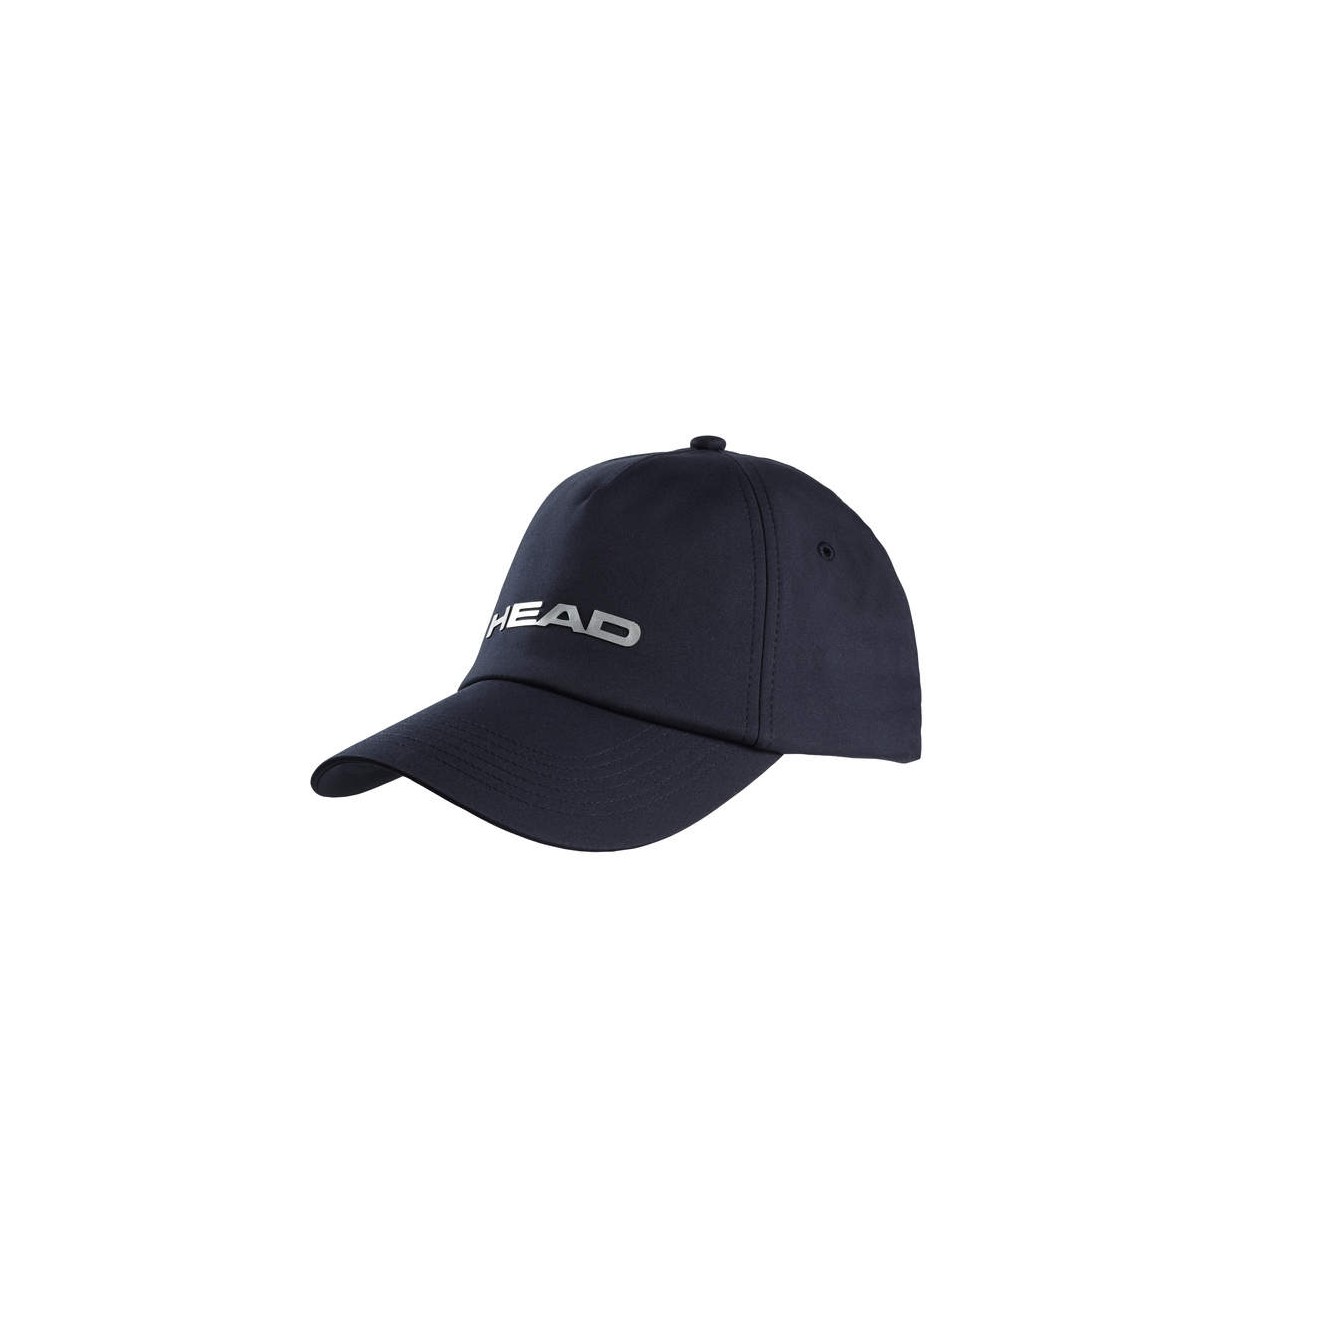 Comprar gorra de pádel Head online